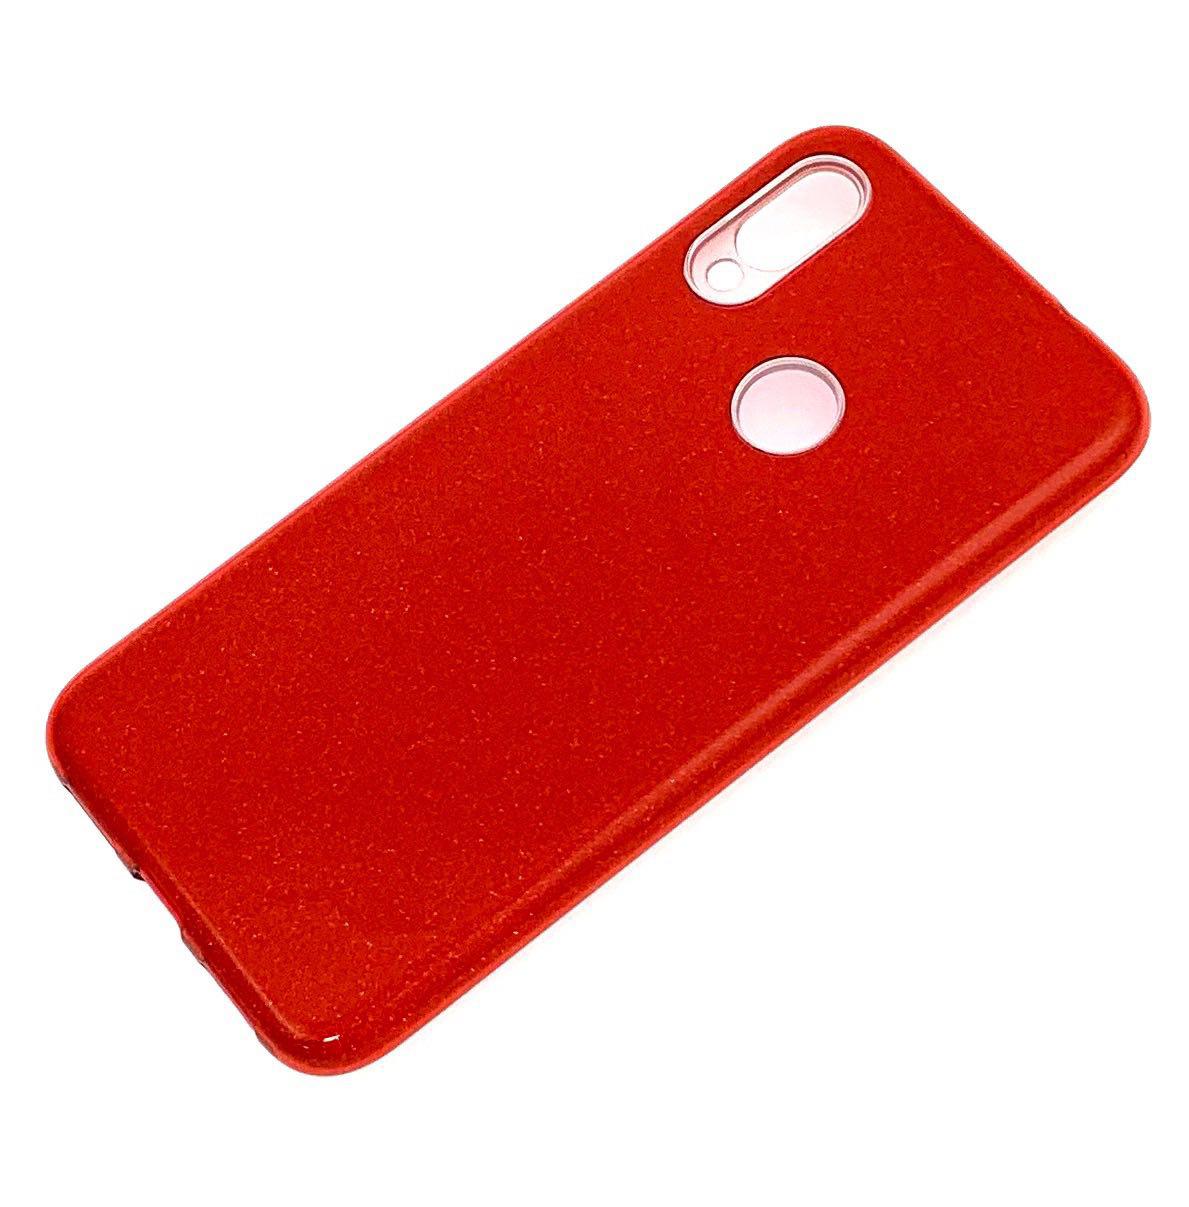 Чехол накладка для XIAOMI REDMI NOTE 7, NOTE 7 PRO, силикон, блёстки, цвет красный.